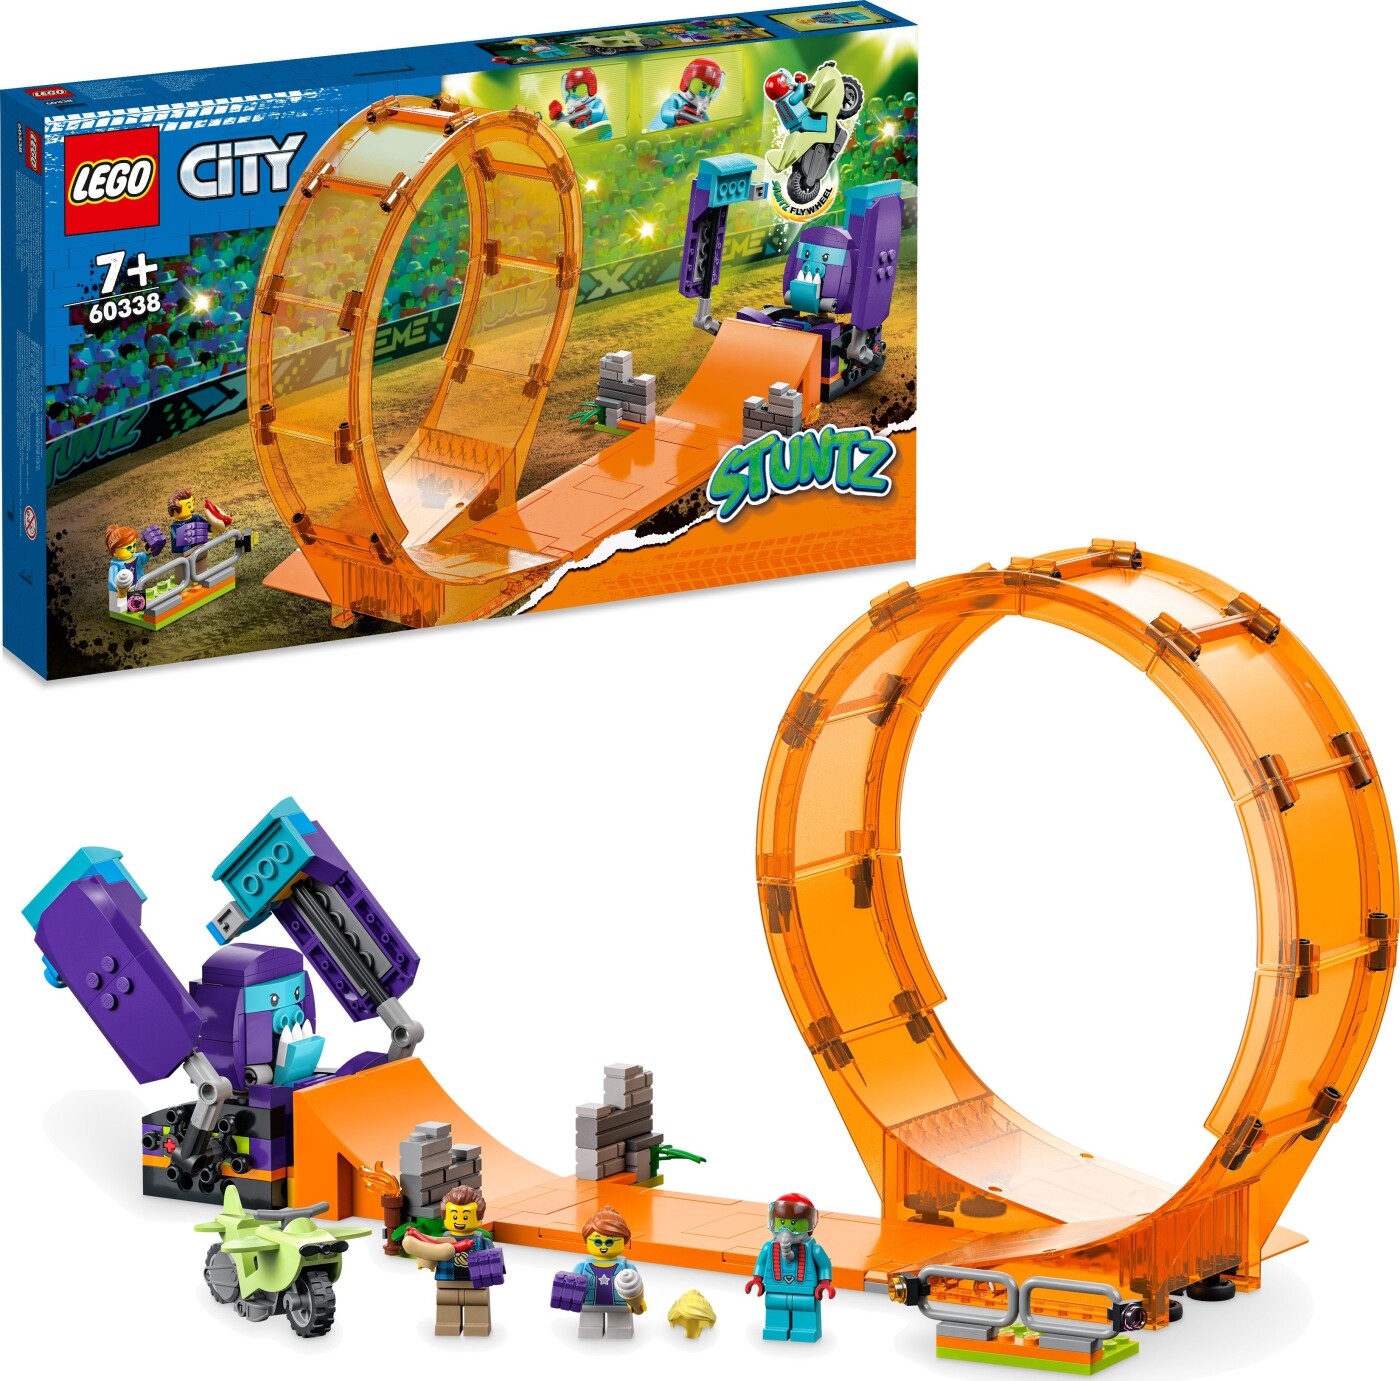 Billede af Lego City - Smadrende Chimpanse Stuntloop - 60338